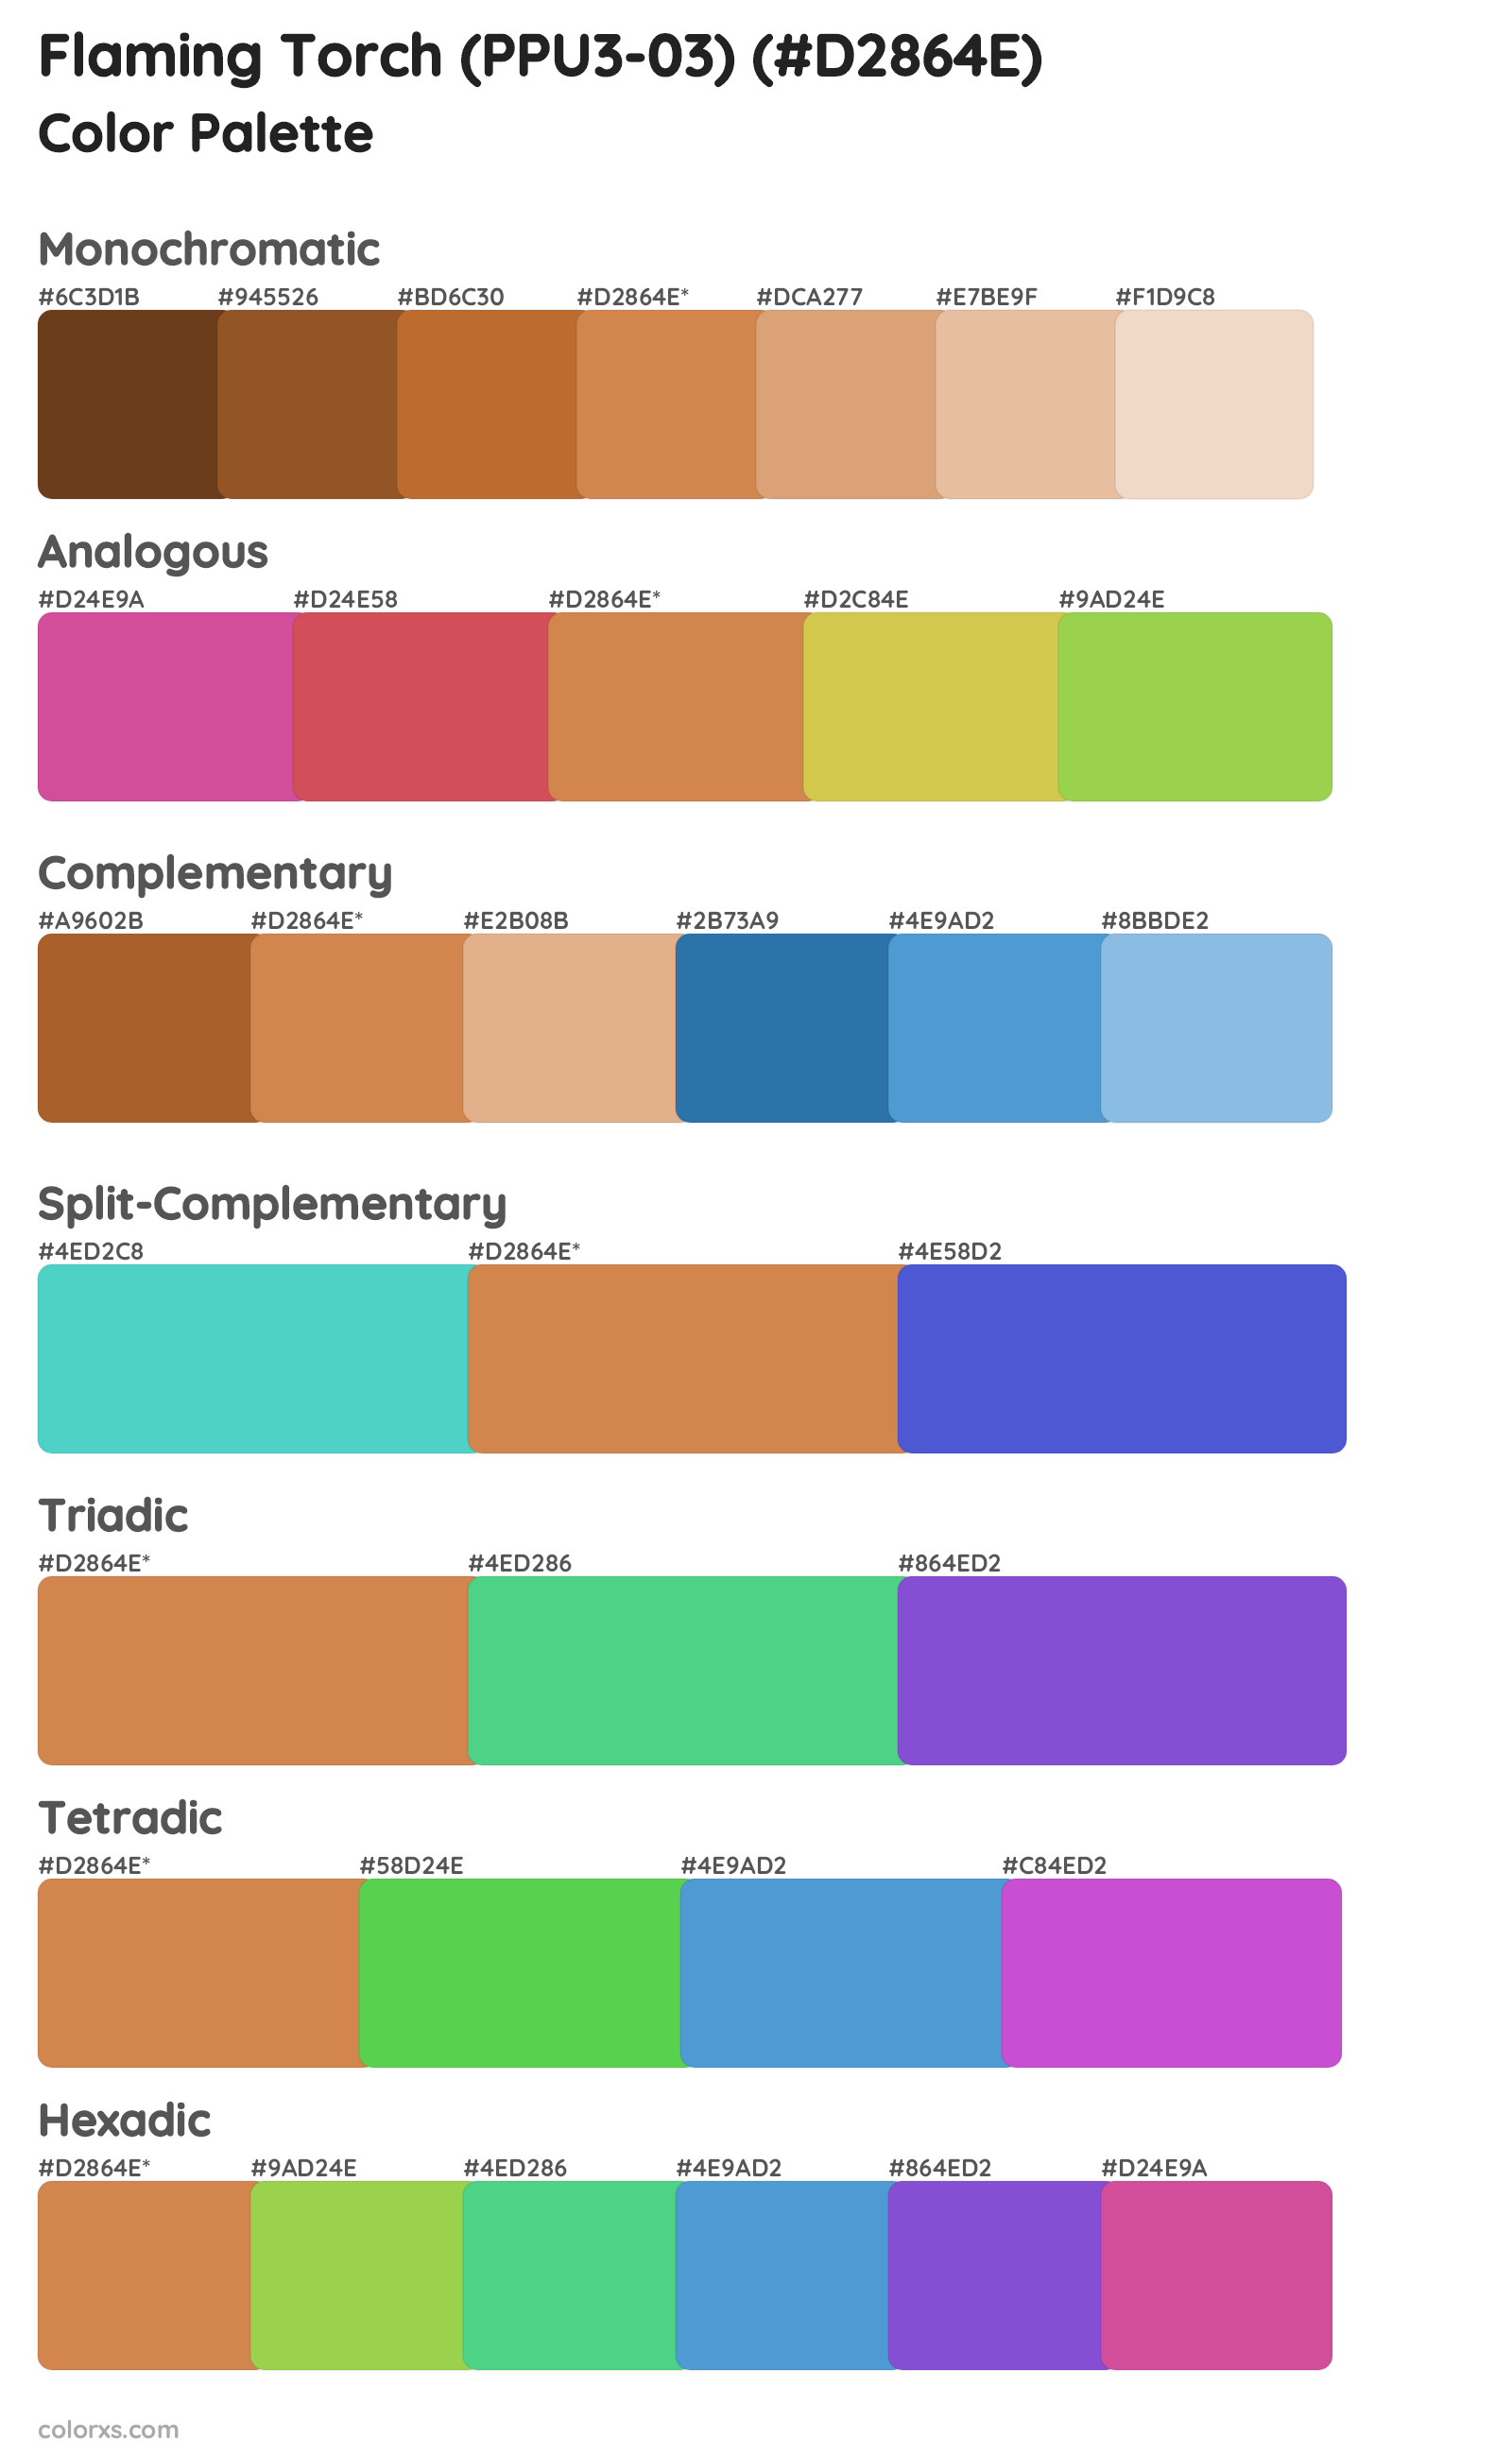 Flaming Torch (PPU3-03) Color Scheme Palettes